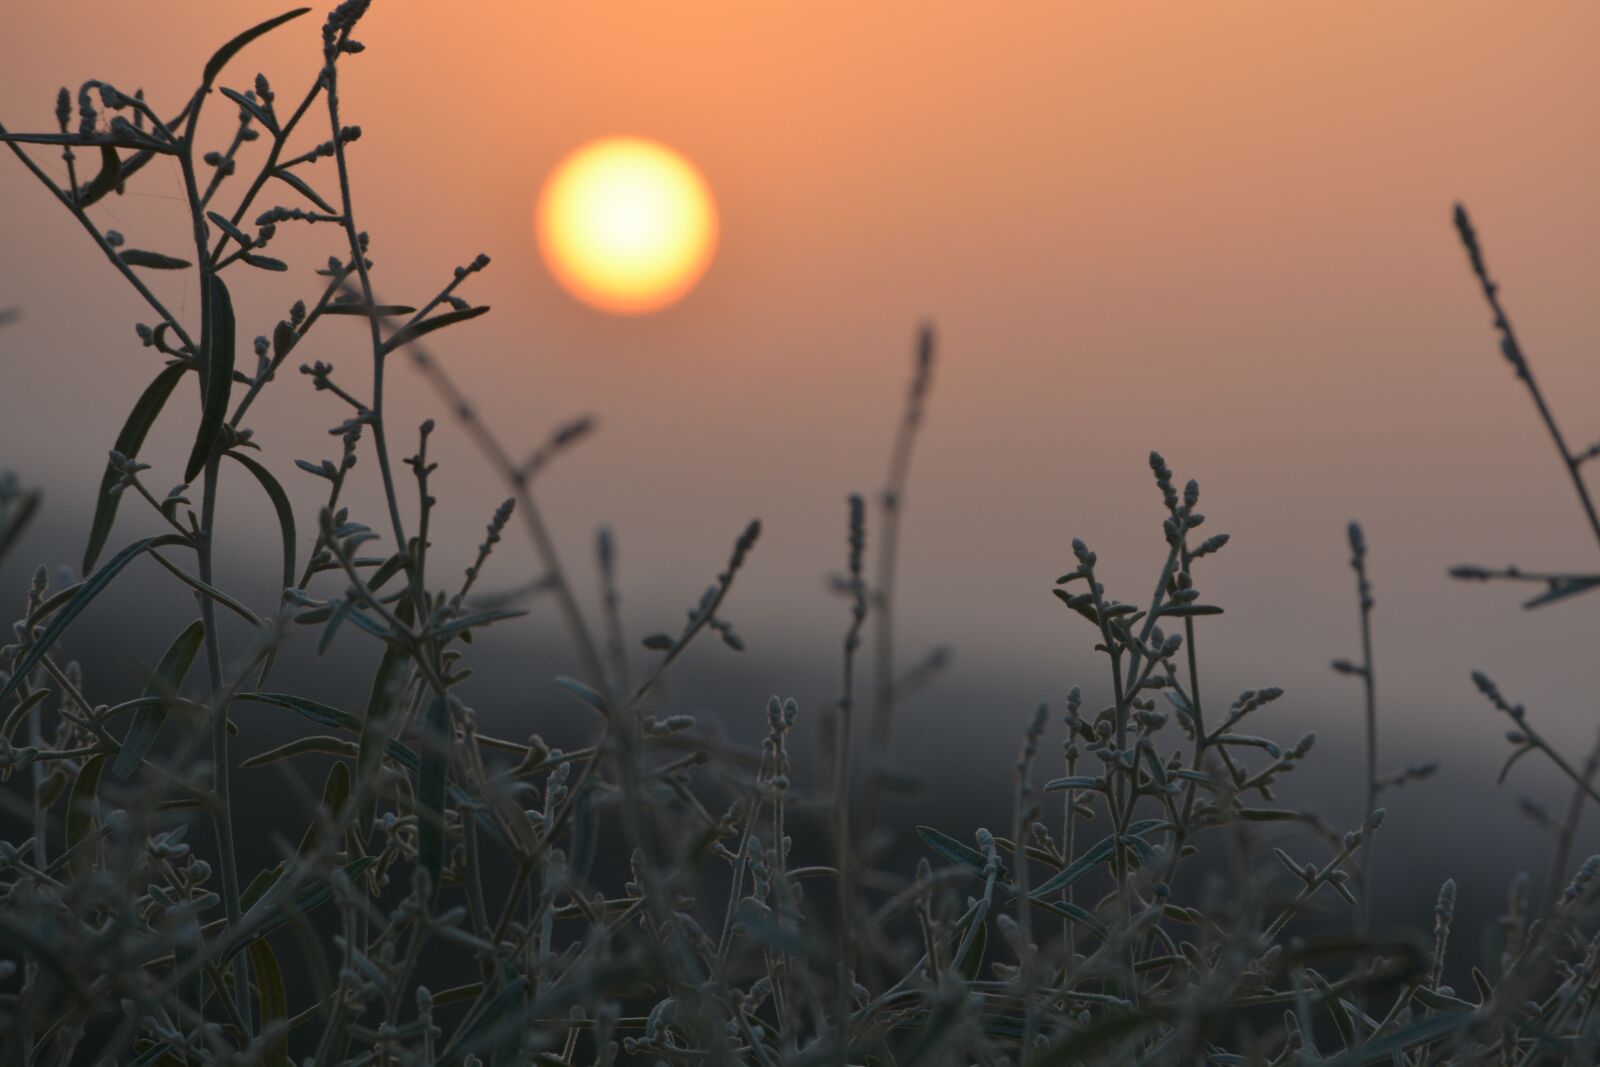 Nikon D5200 sample photo. Sunrise, sunset, dawn photography